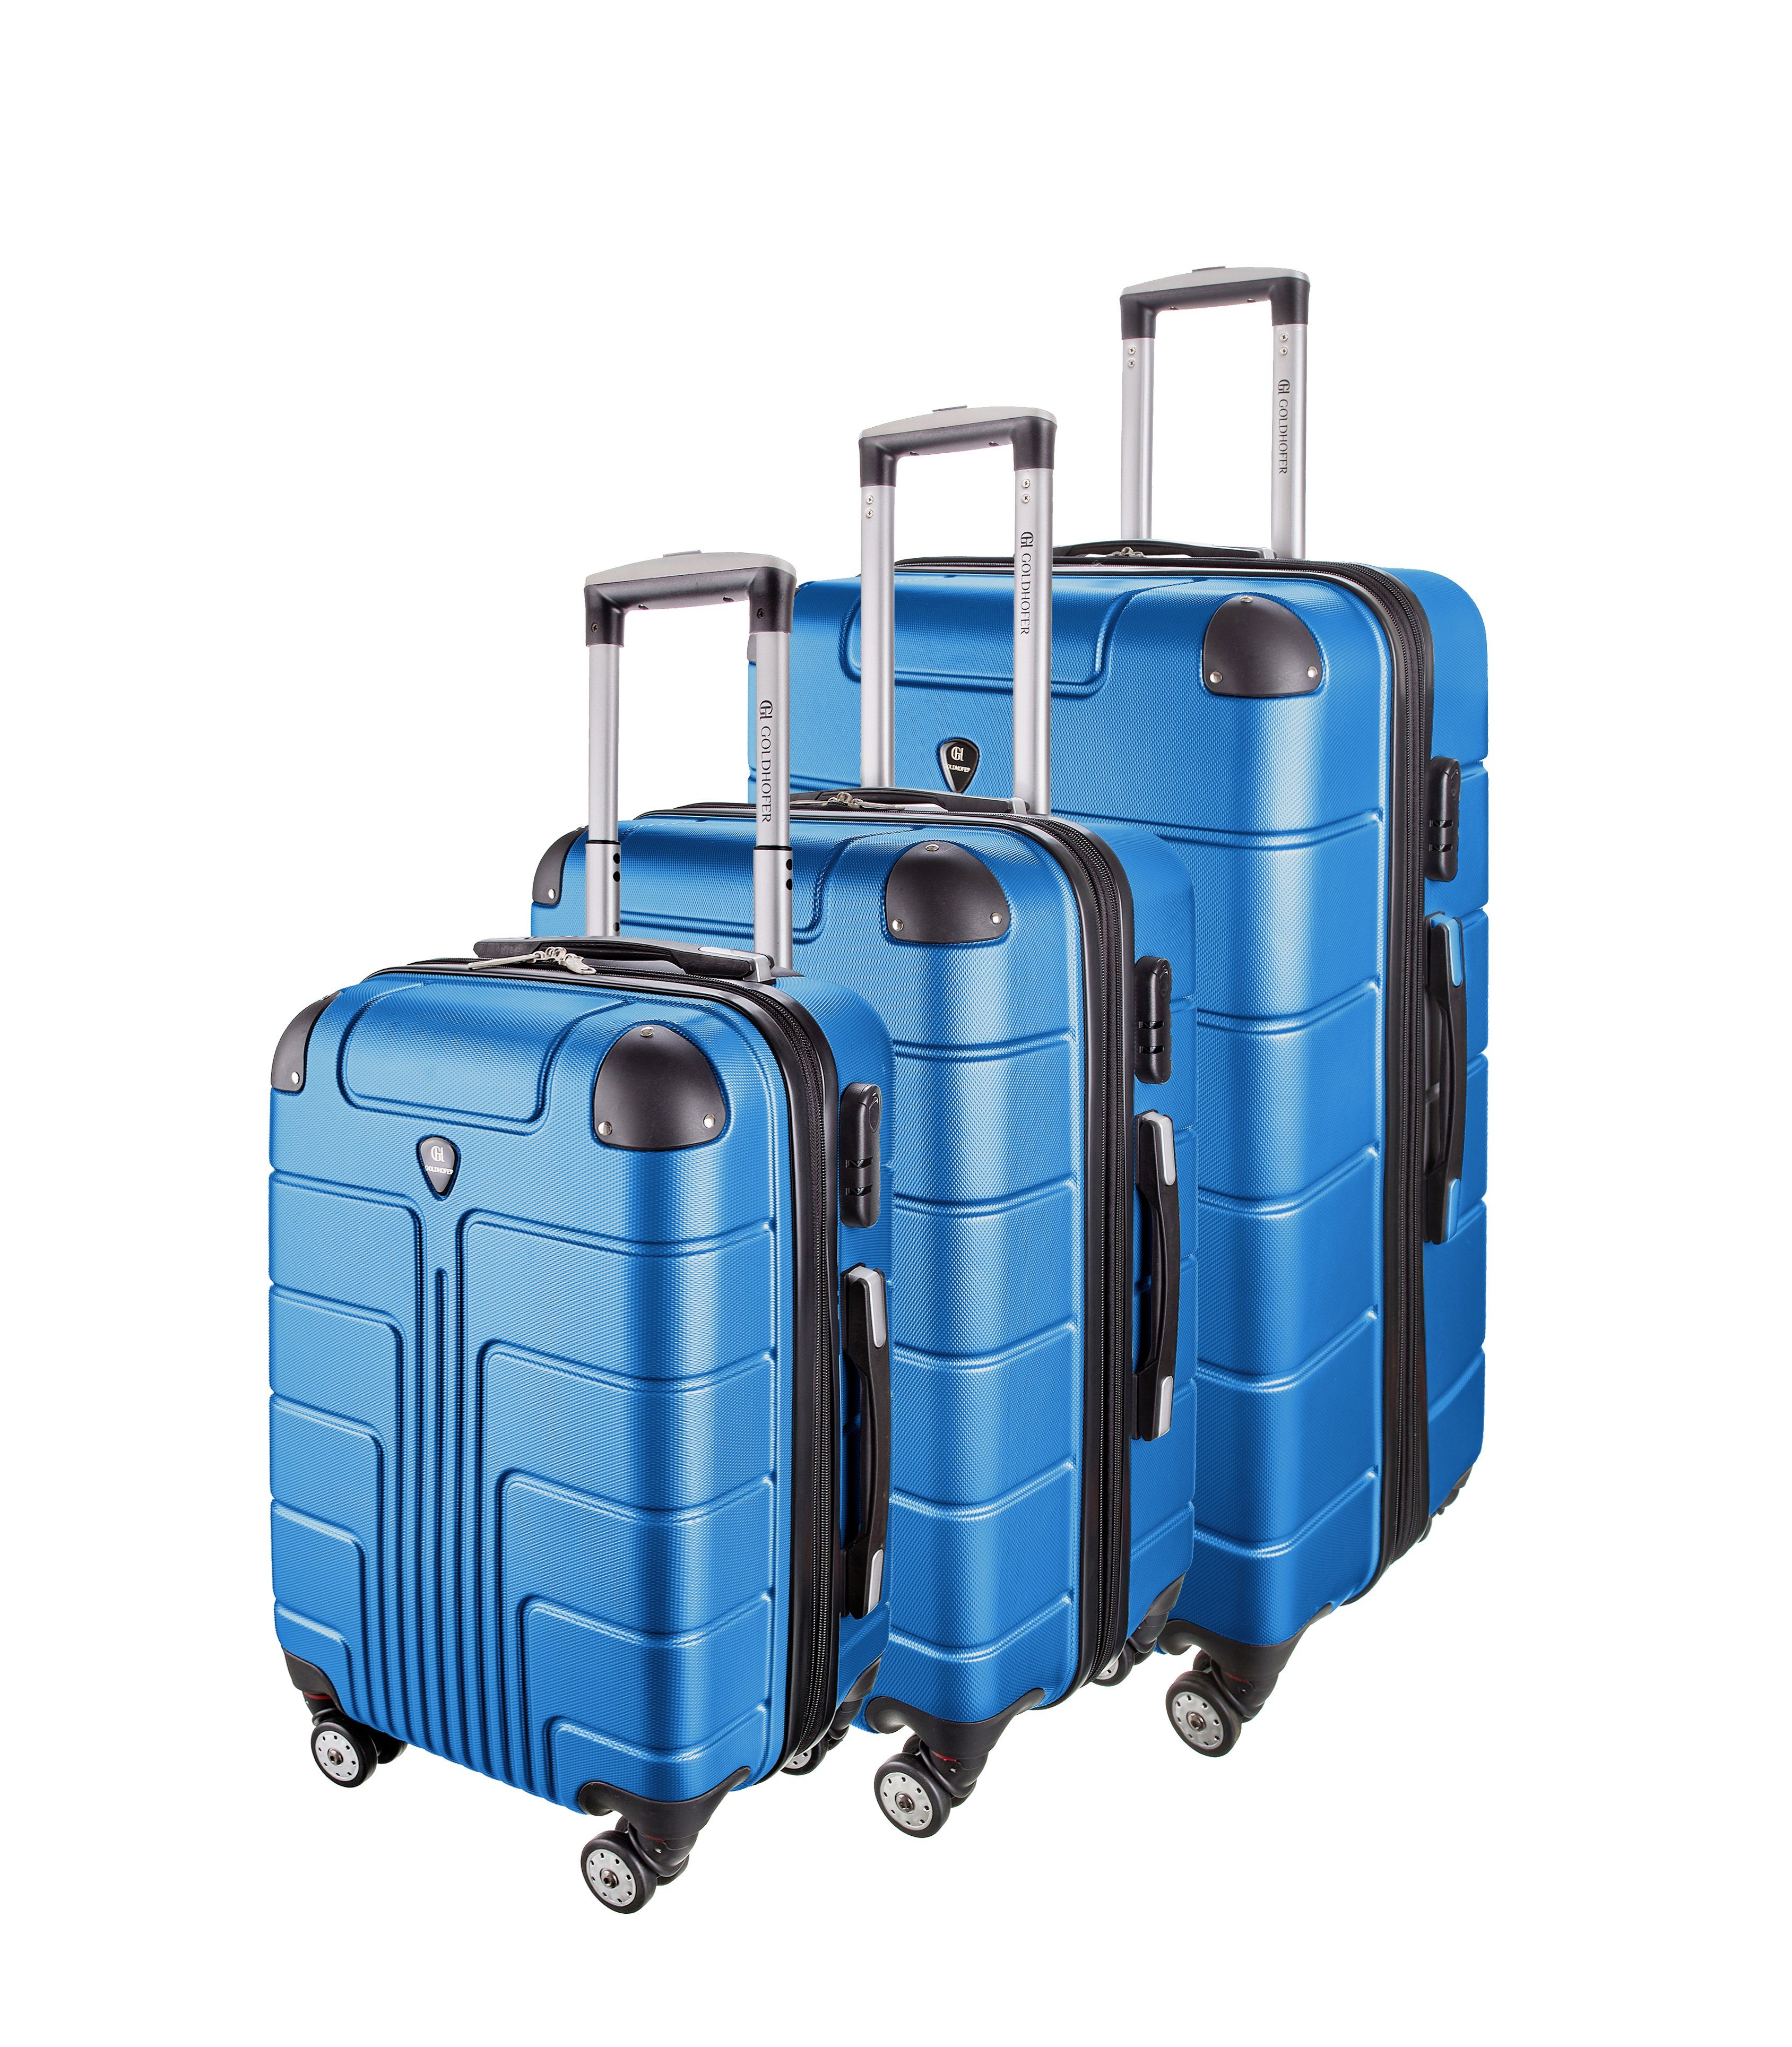 Goldhofer Kofferset verschiedene Modelle in 3 Größen & Farben mit 360° Leichtlaufrollen, (Set, 3 TLG), Außen Material ABS - Wasserabweisend